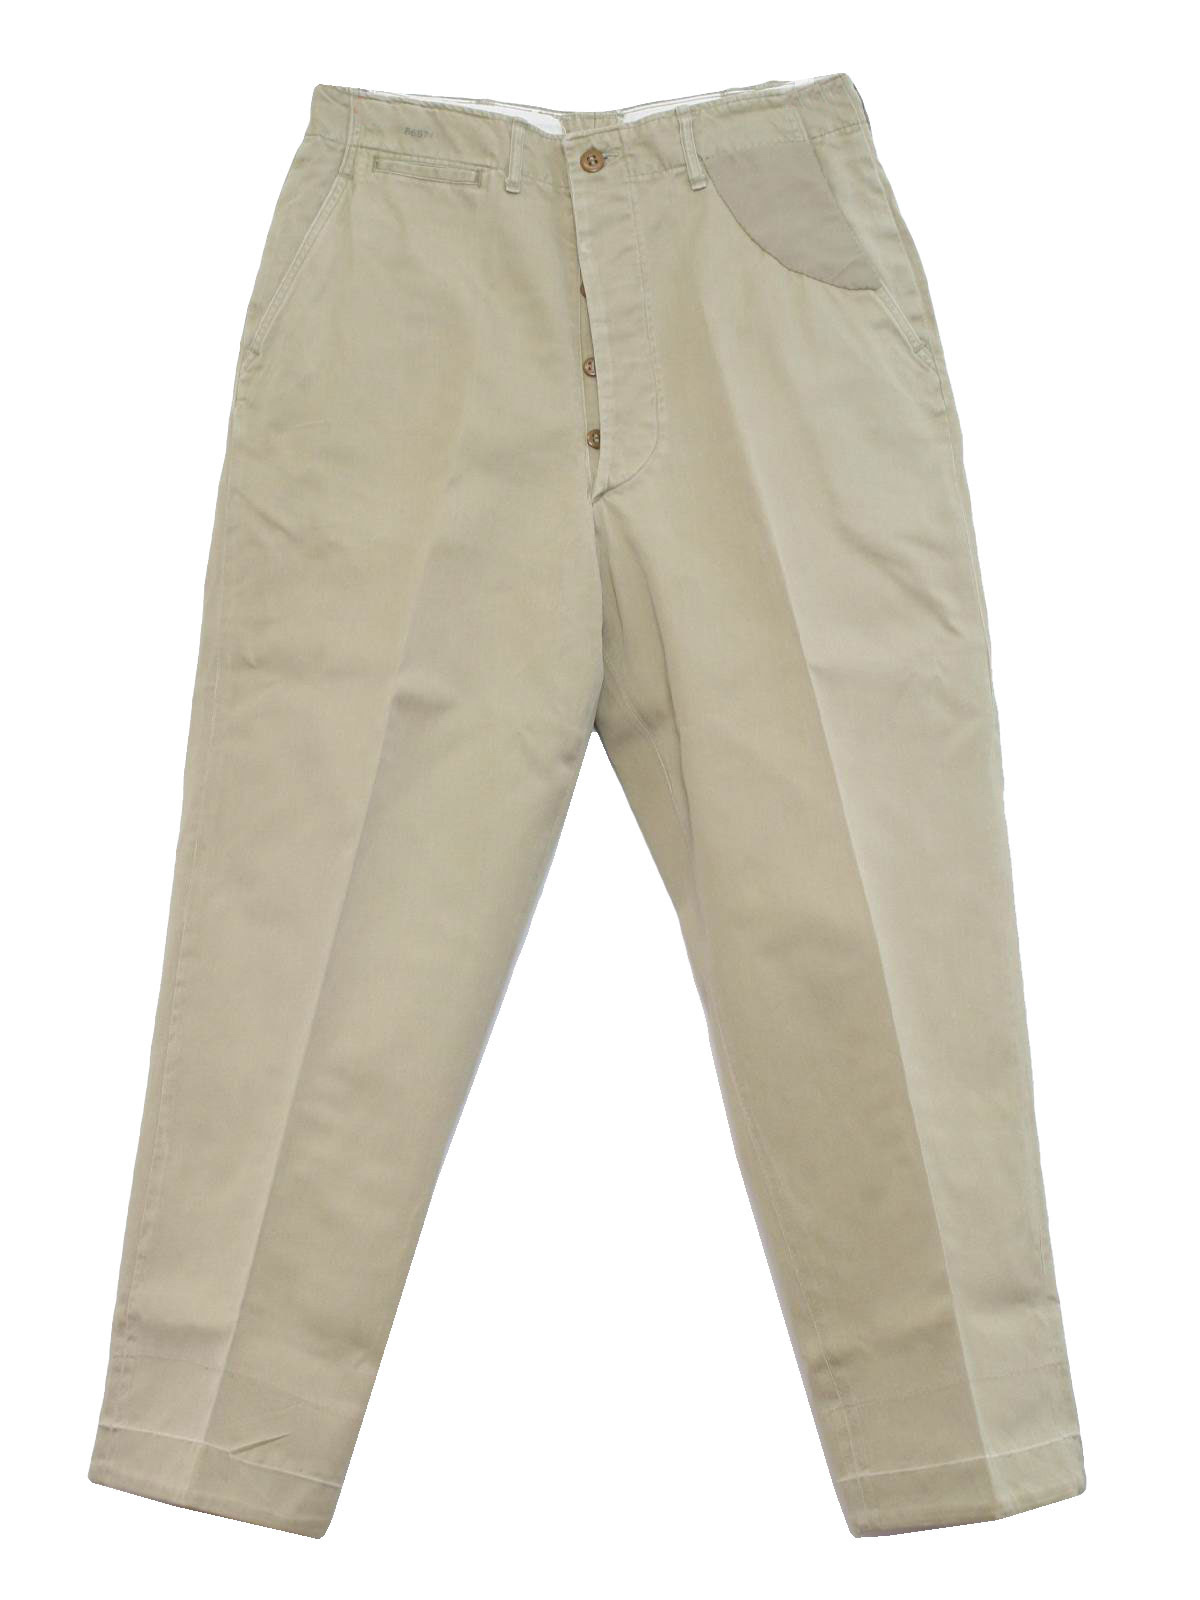 Navy Uniforms: Navy Uniform Khaki Pants Men